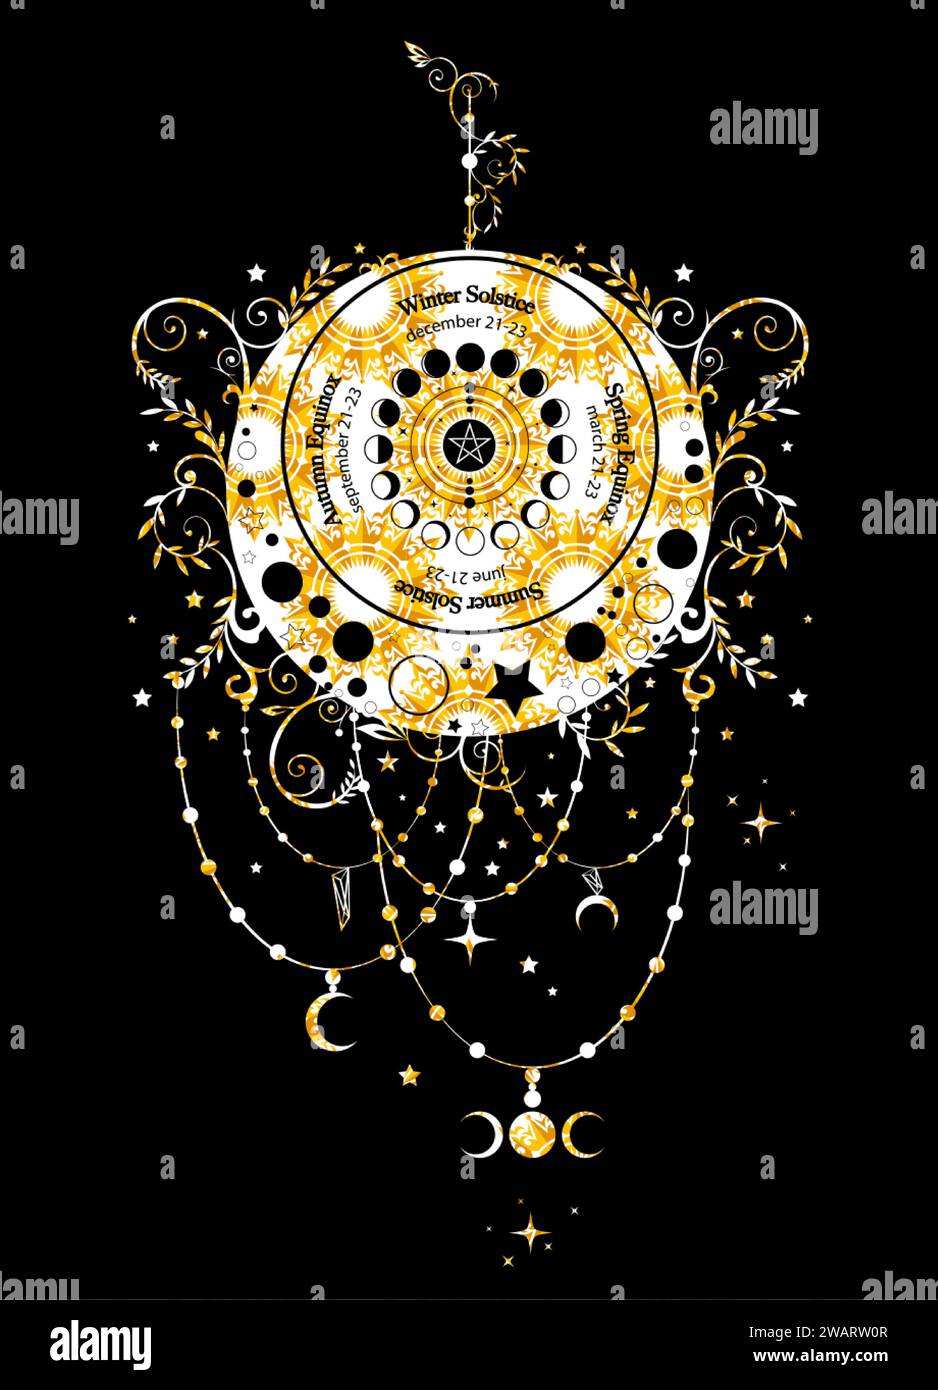 cercle du solstice et de l'équinoxe, roue des phases de lune avec dates et noms. Or luxe floral croissant de lune dans le style Boho. Signe de wicca de l'oracle païen chanceux Illustration de Vecteur